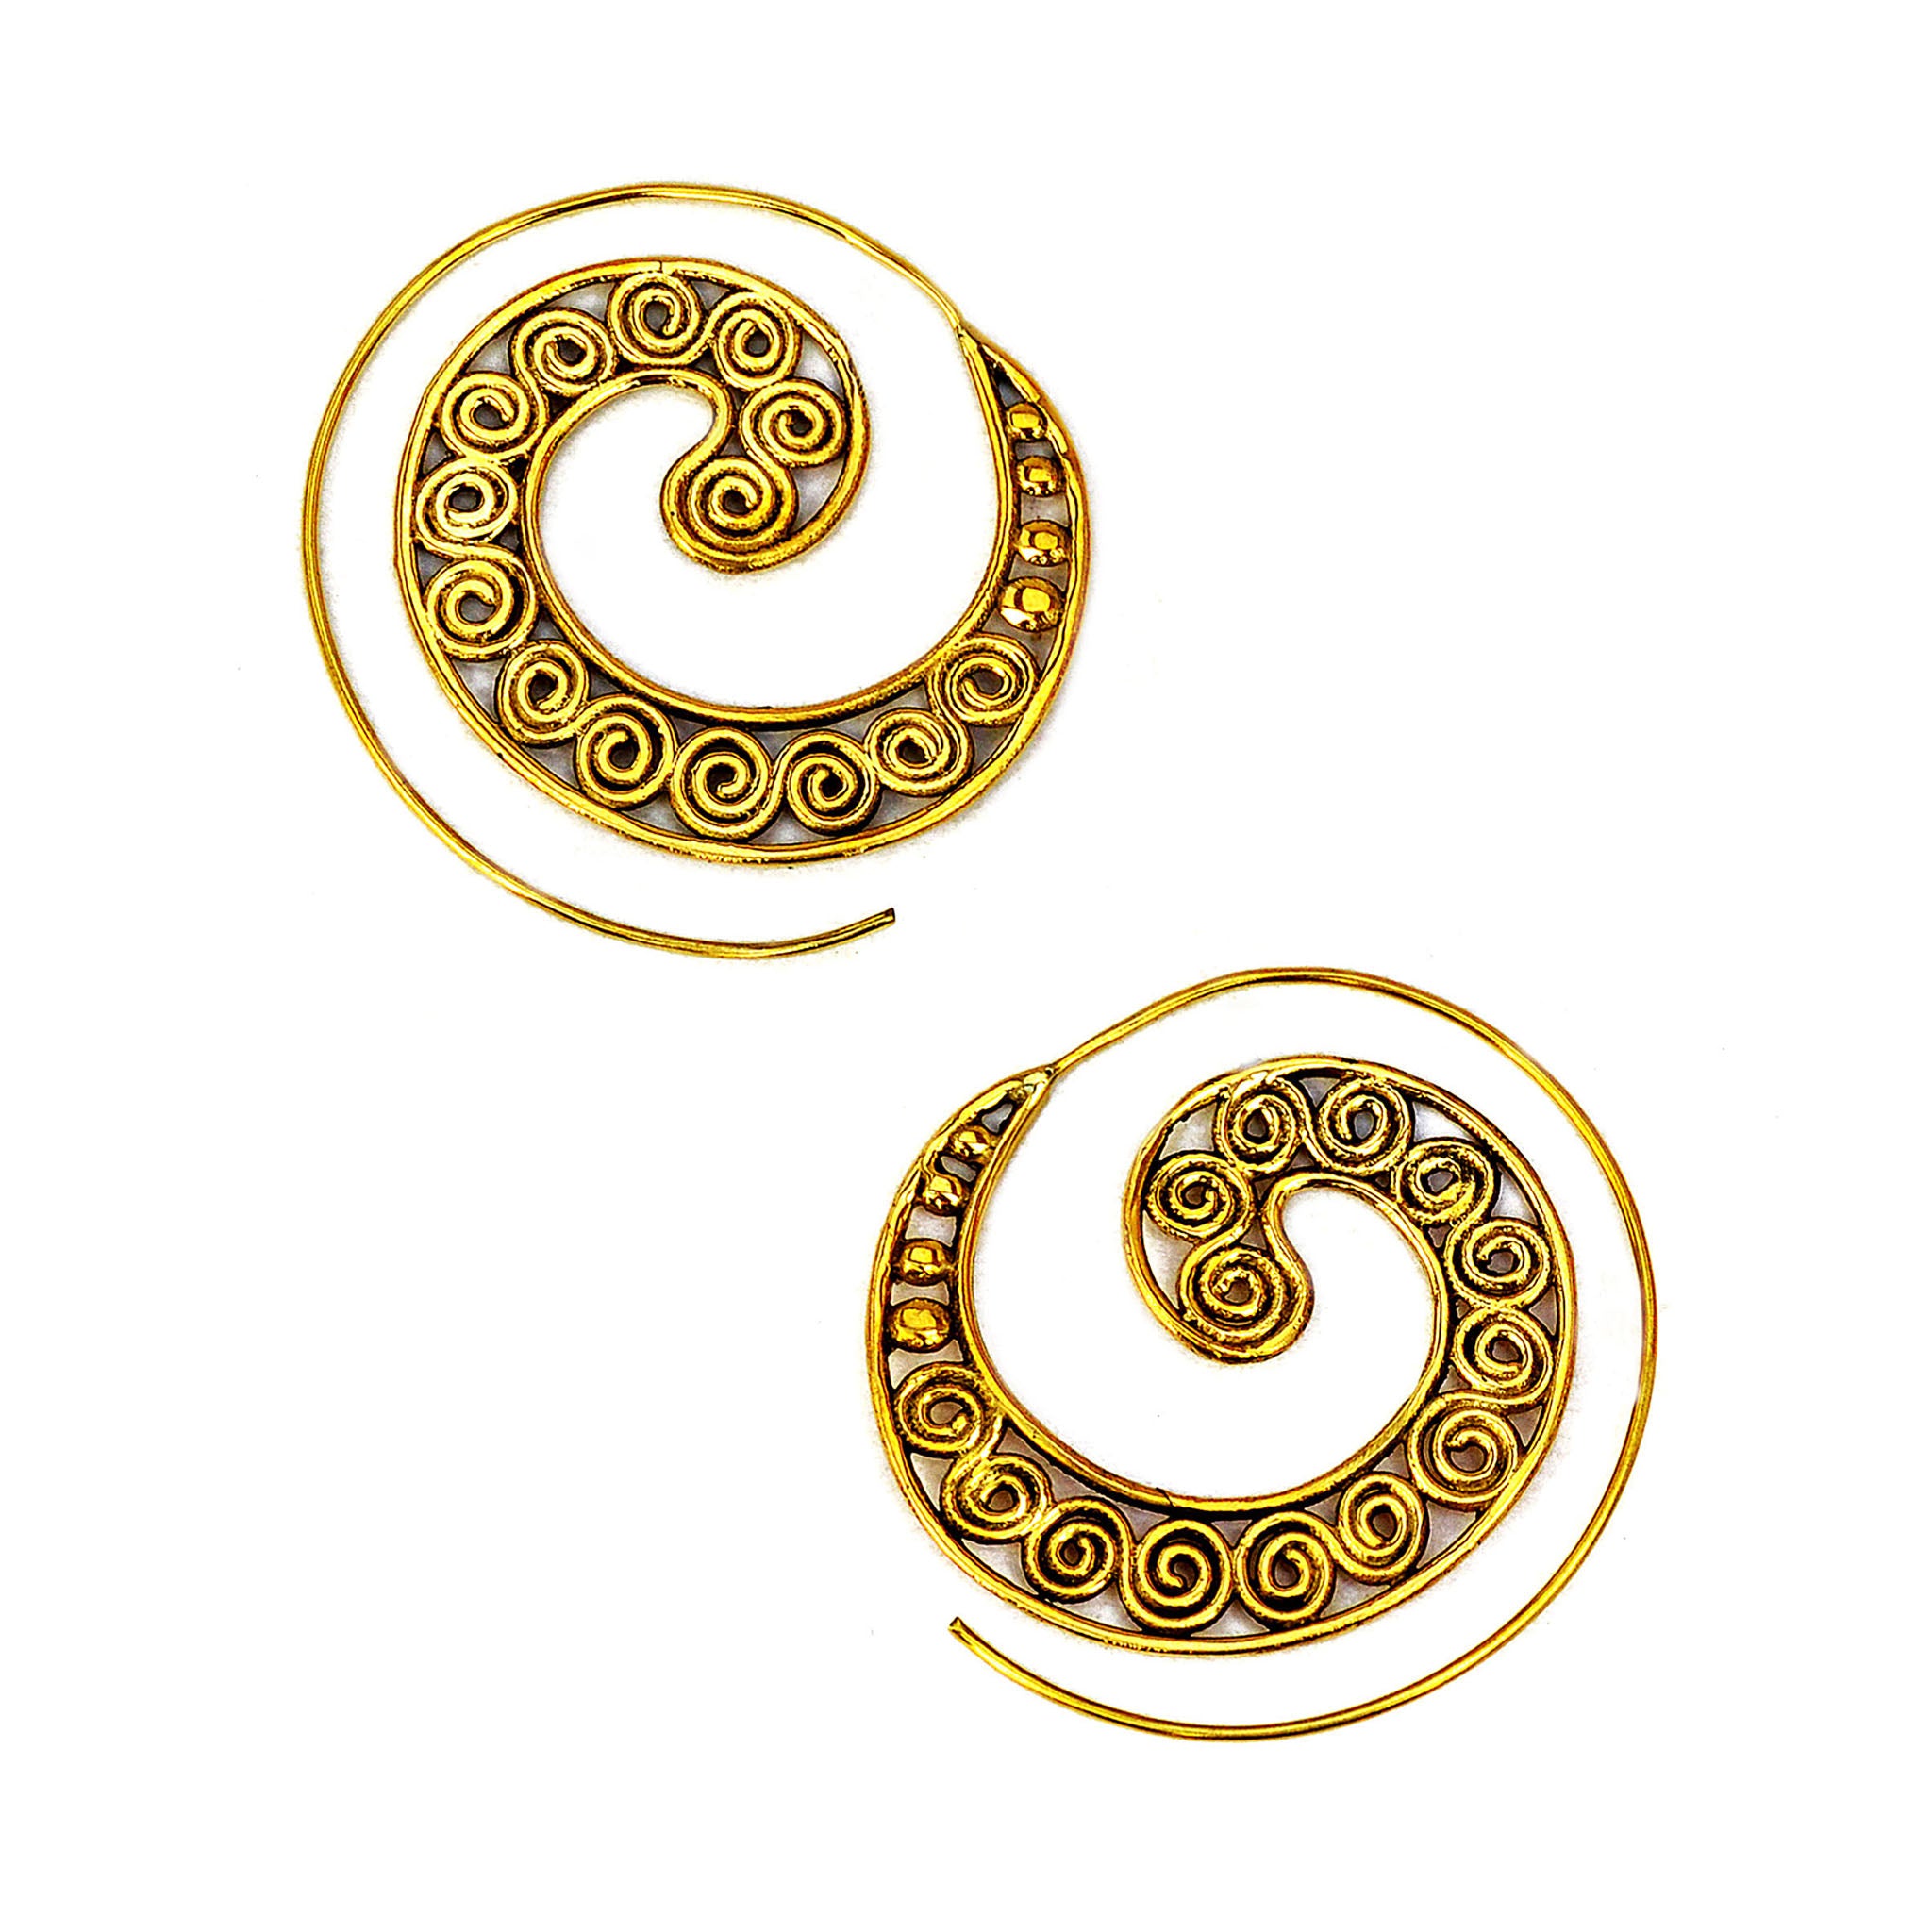 Hippie spiral earrings